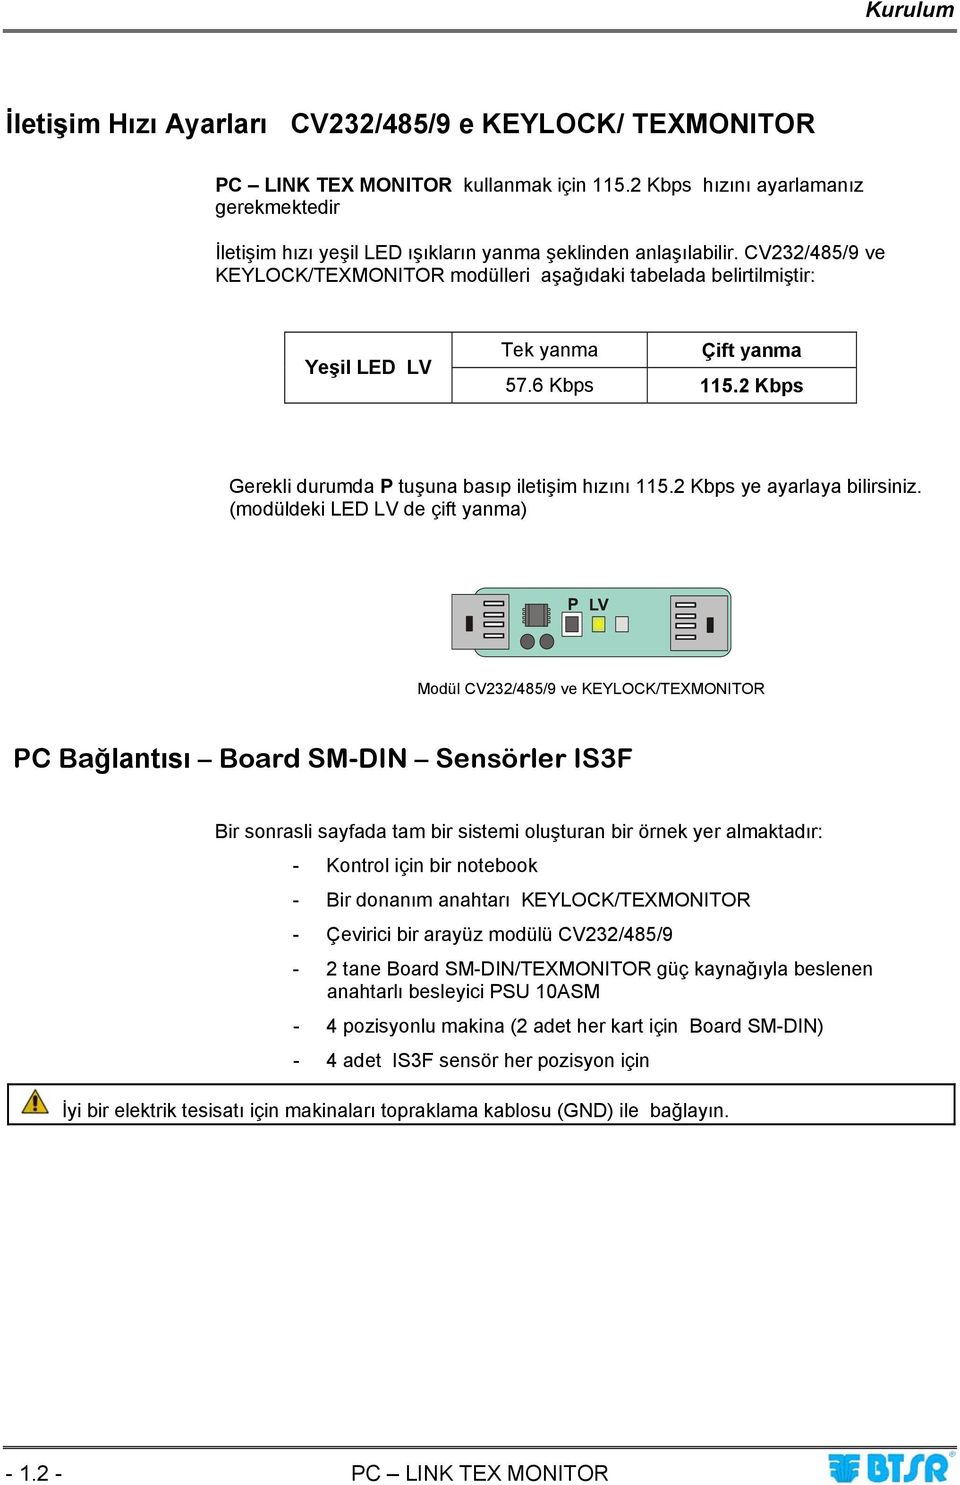 CV232/485/9 ve KEYLOCK/TEXMONITOR modülleri aşağıdaki tabelada belirtilmiştir: Yeşil LED LV Tek yanma Çift yanma 57.6 Kbps 115.2 Kbps Gerekli durumda P tuşuna basıp iletişim hızını 115.